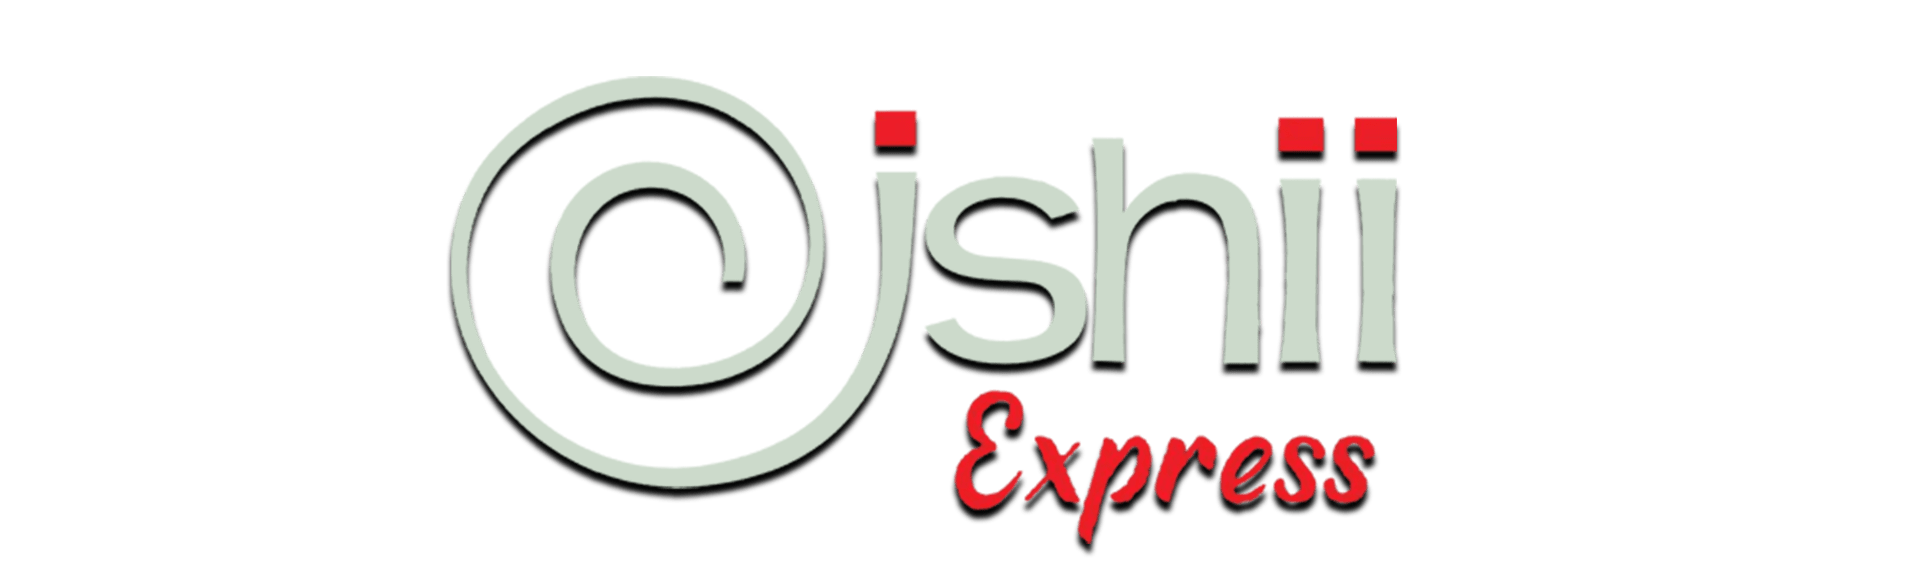 Oishii Express, Madera